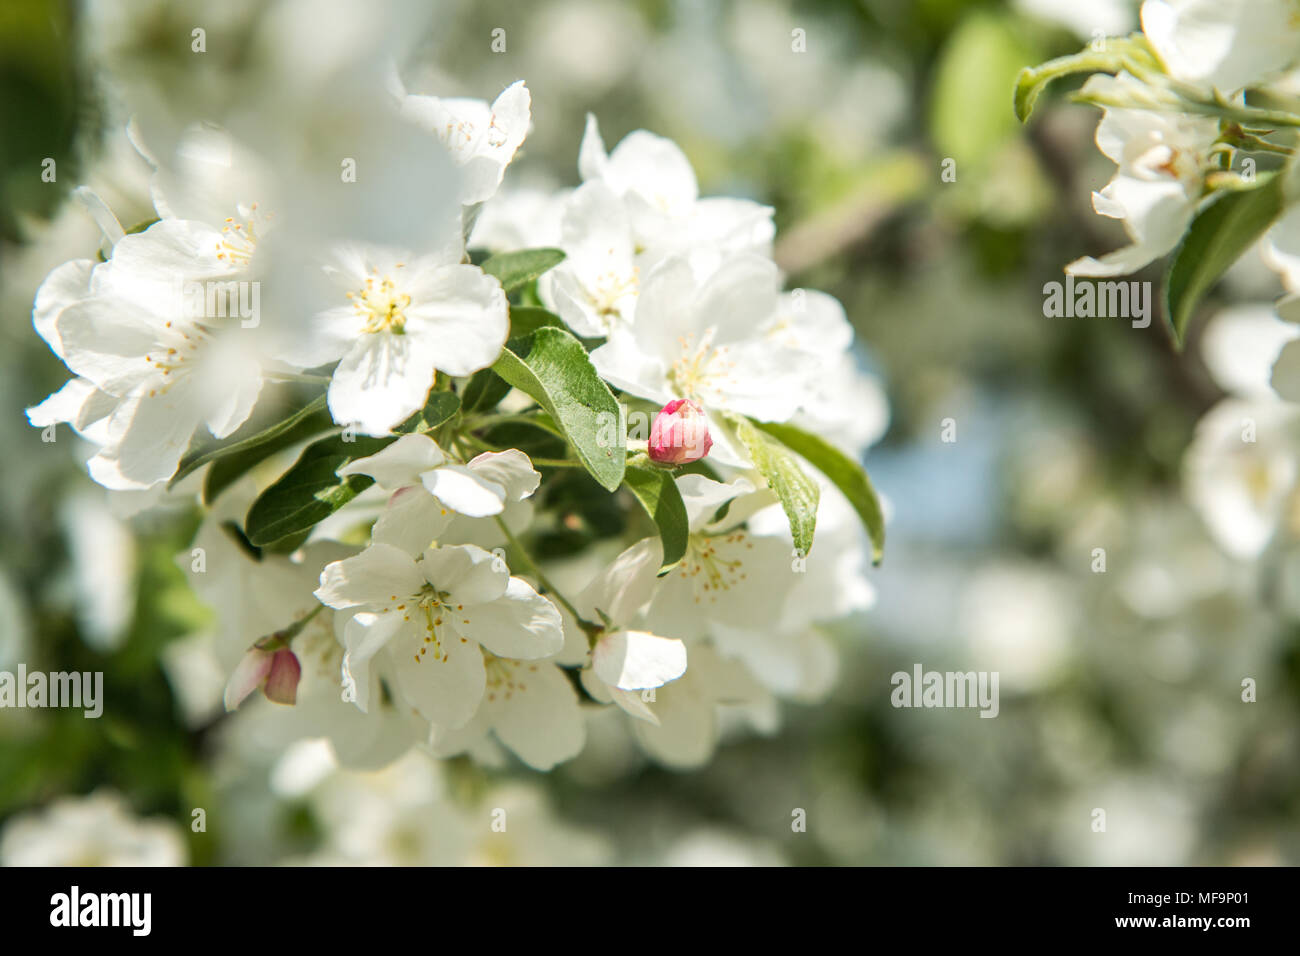 Détail d'une photo de fleurs d'arbre blanc de printemps frais. Le ressort est montrant sa magie Banque D'Images